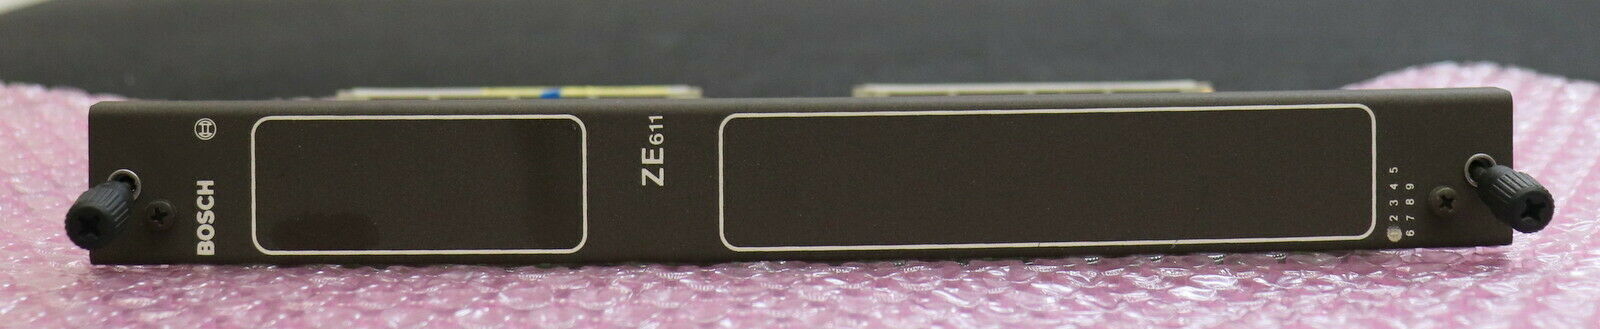 BOSCH Zentraleinheit ZE611 Mat.Nr. 1070063804-106 von einer PFAUTER PE150 CNC